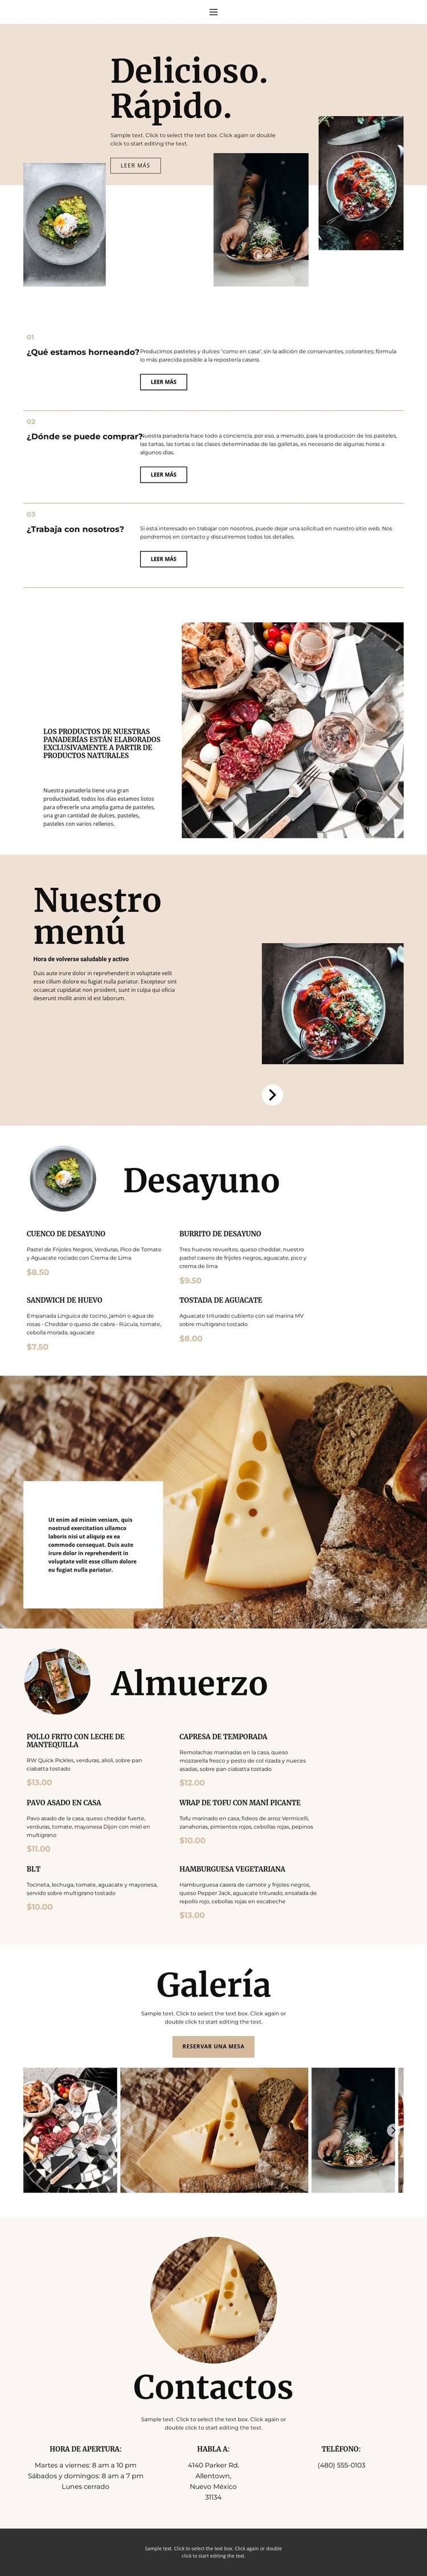 nuevo restaurante Diseño de páginas web